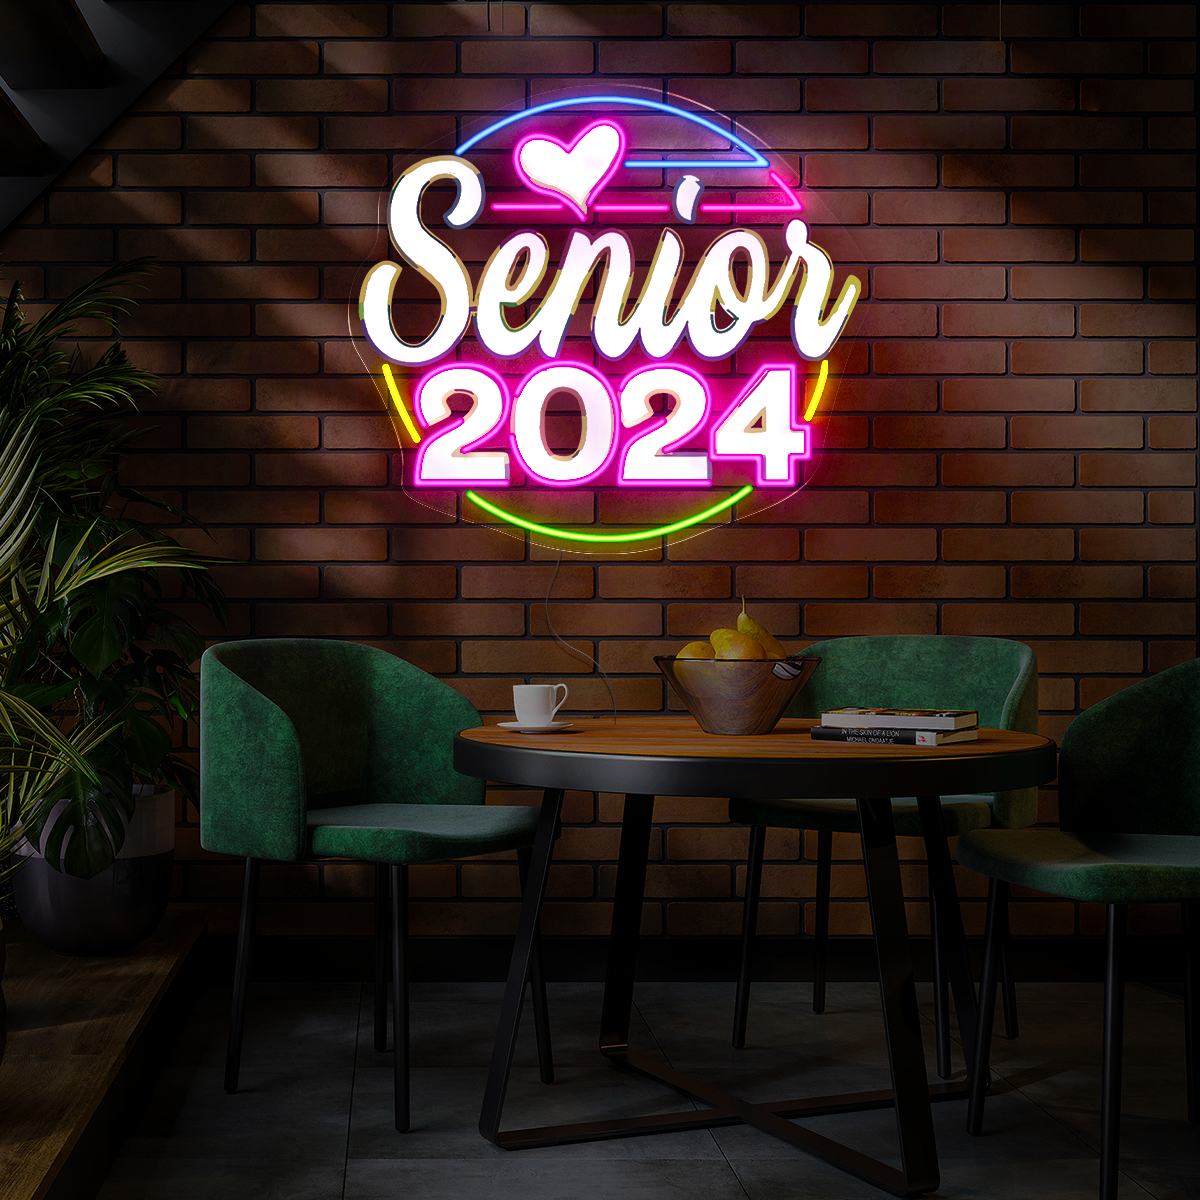 Senior 2024 Artwork Neon Sign